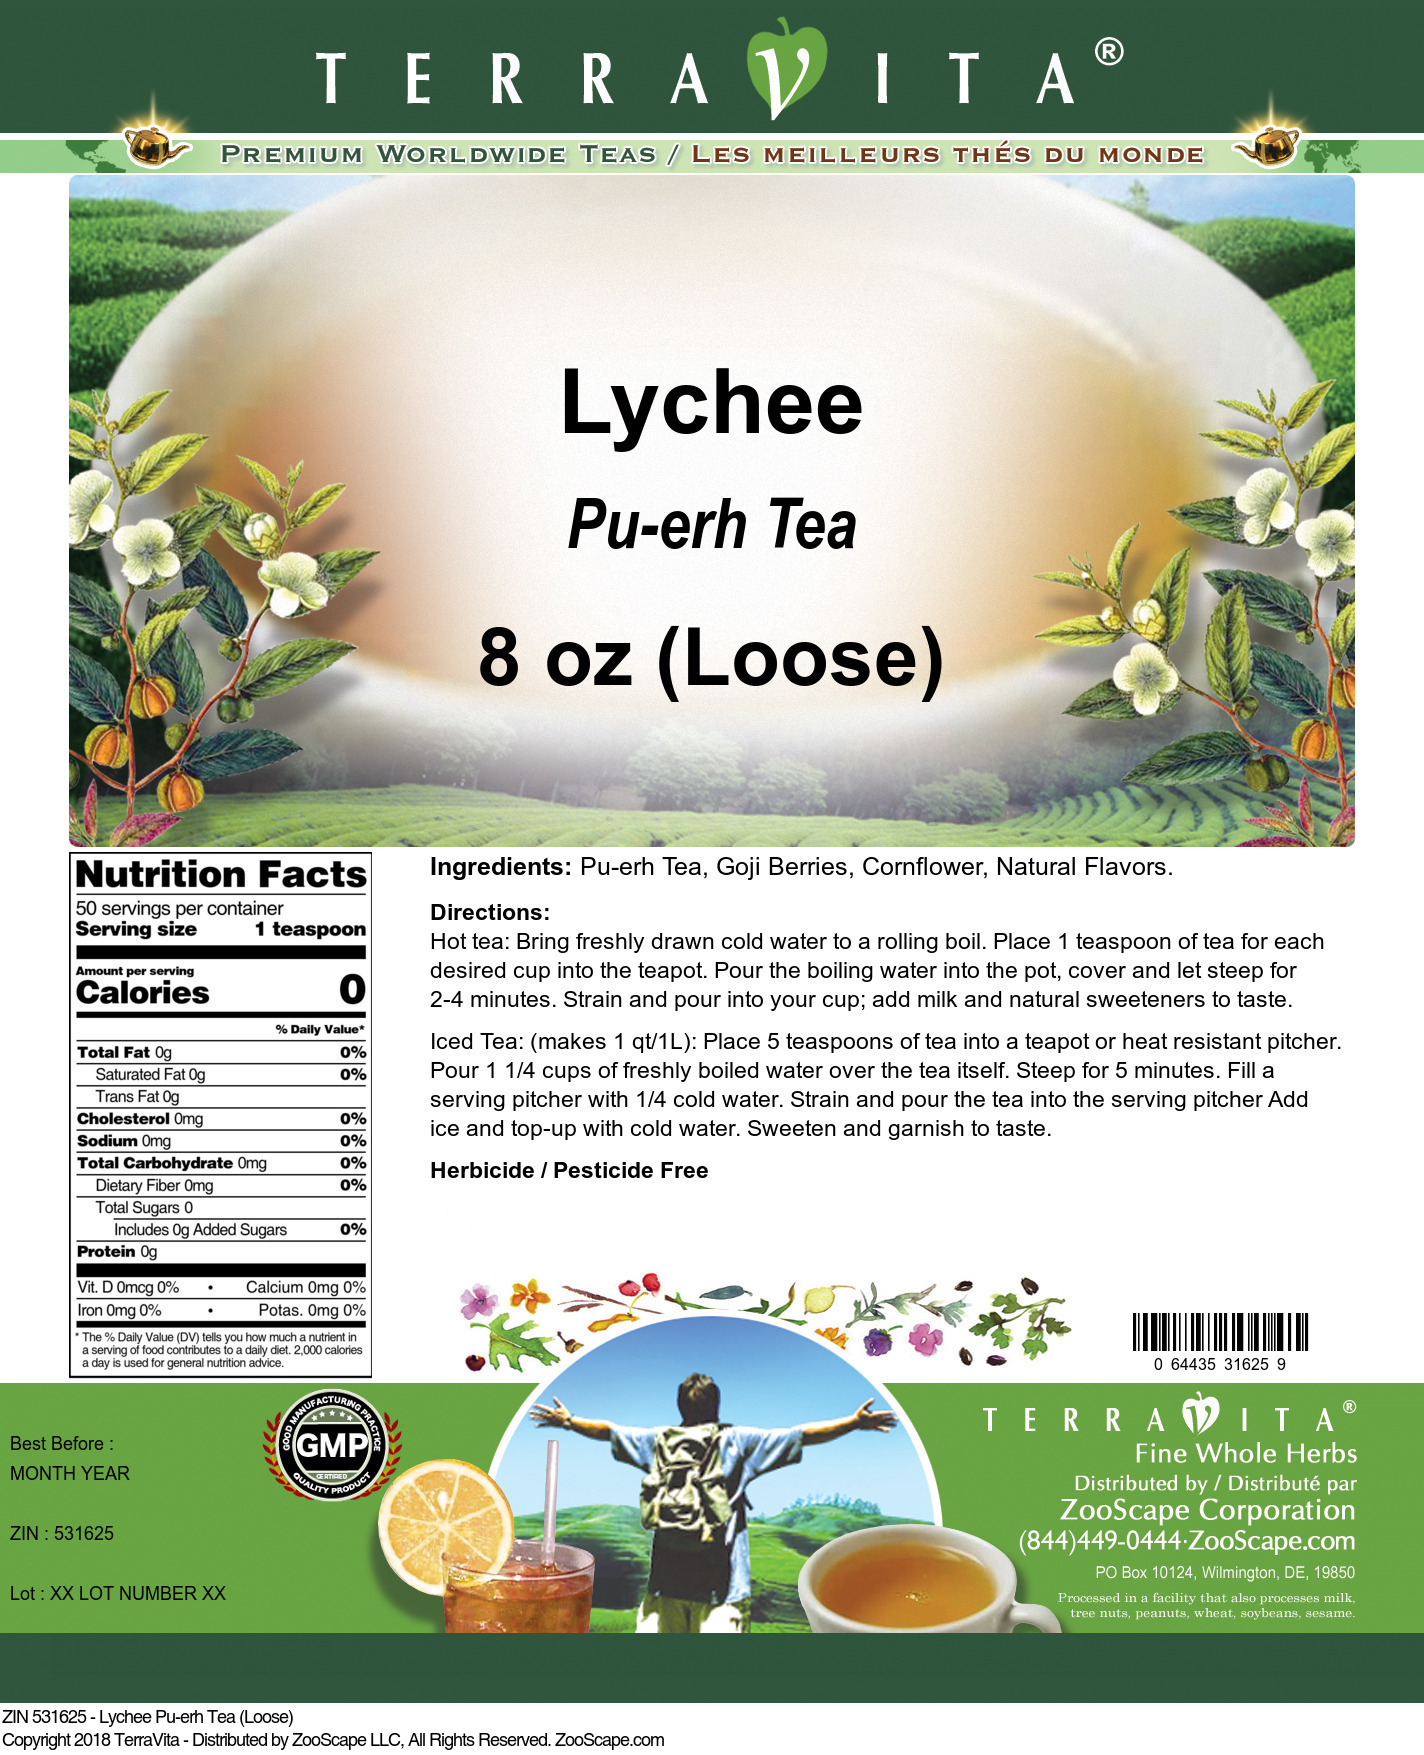 Lychee Pu-erh Tea (Loose) - Label